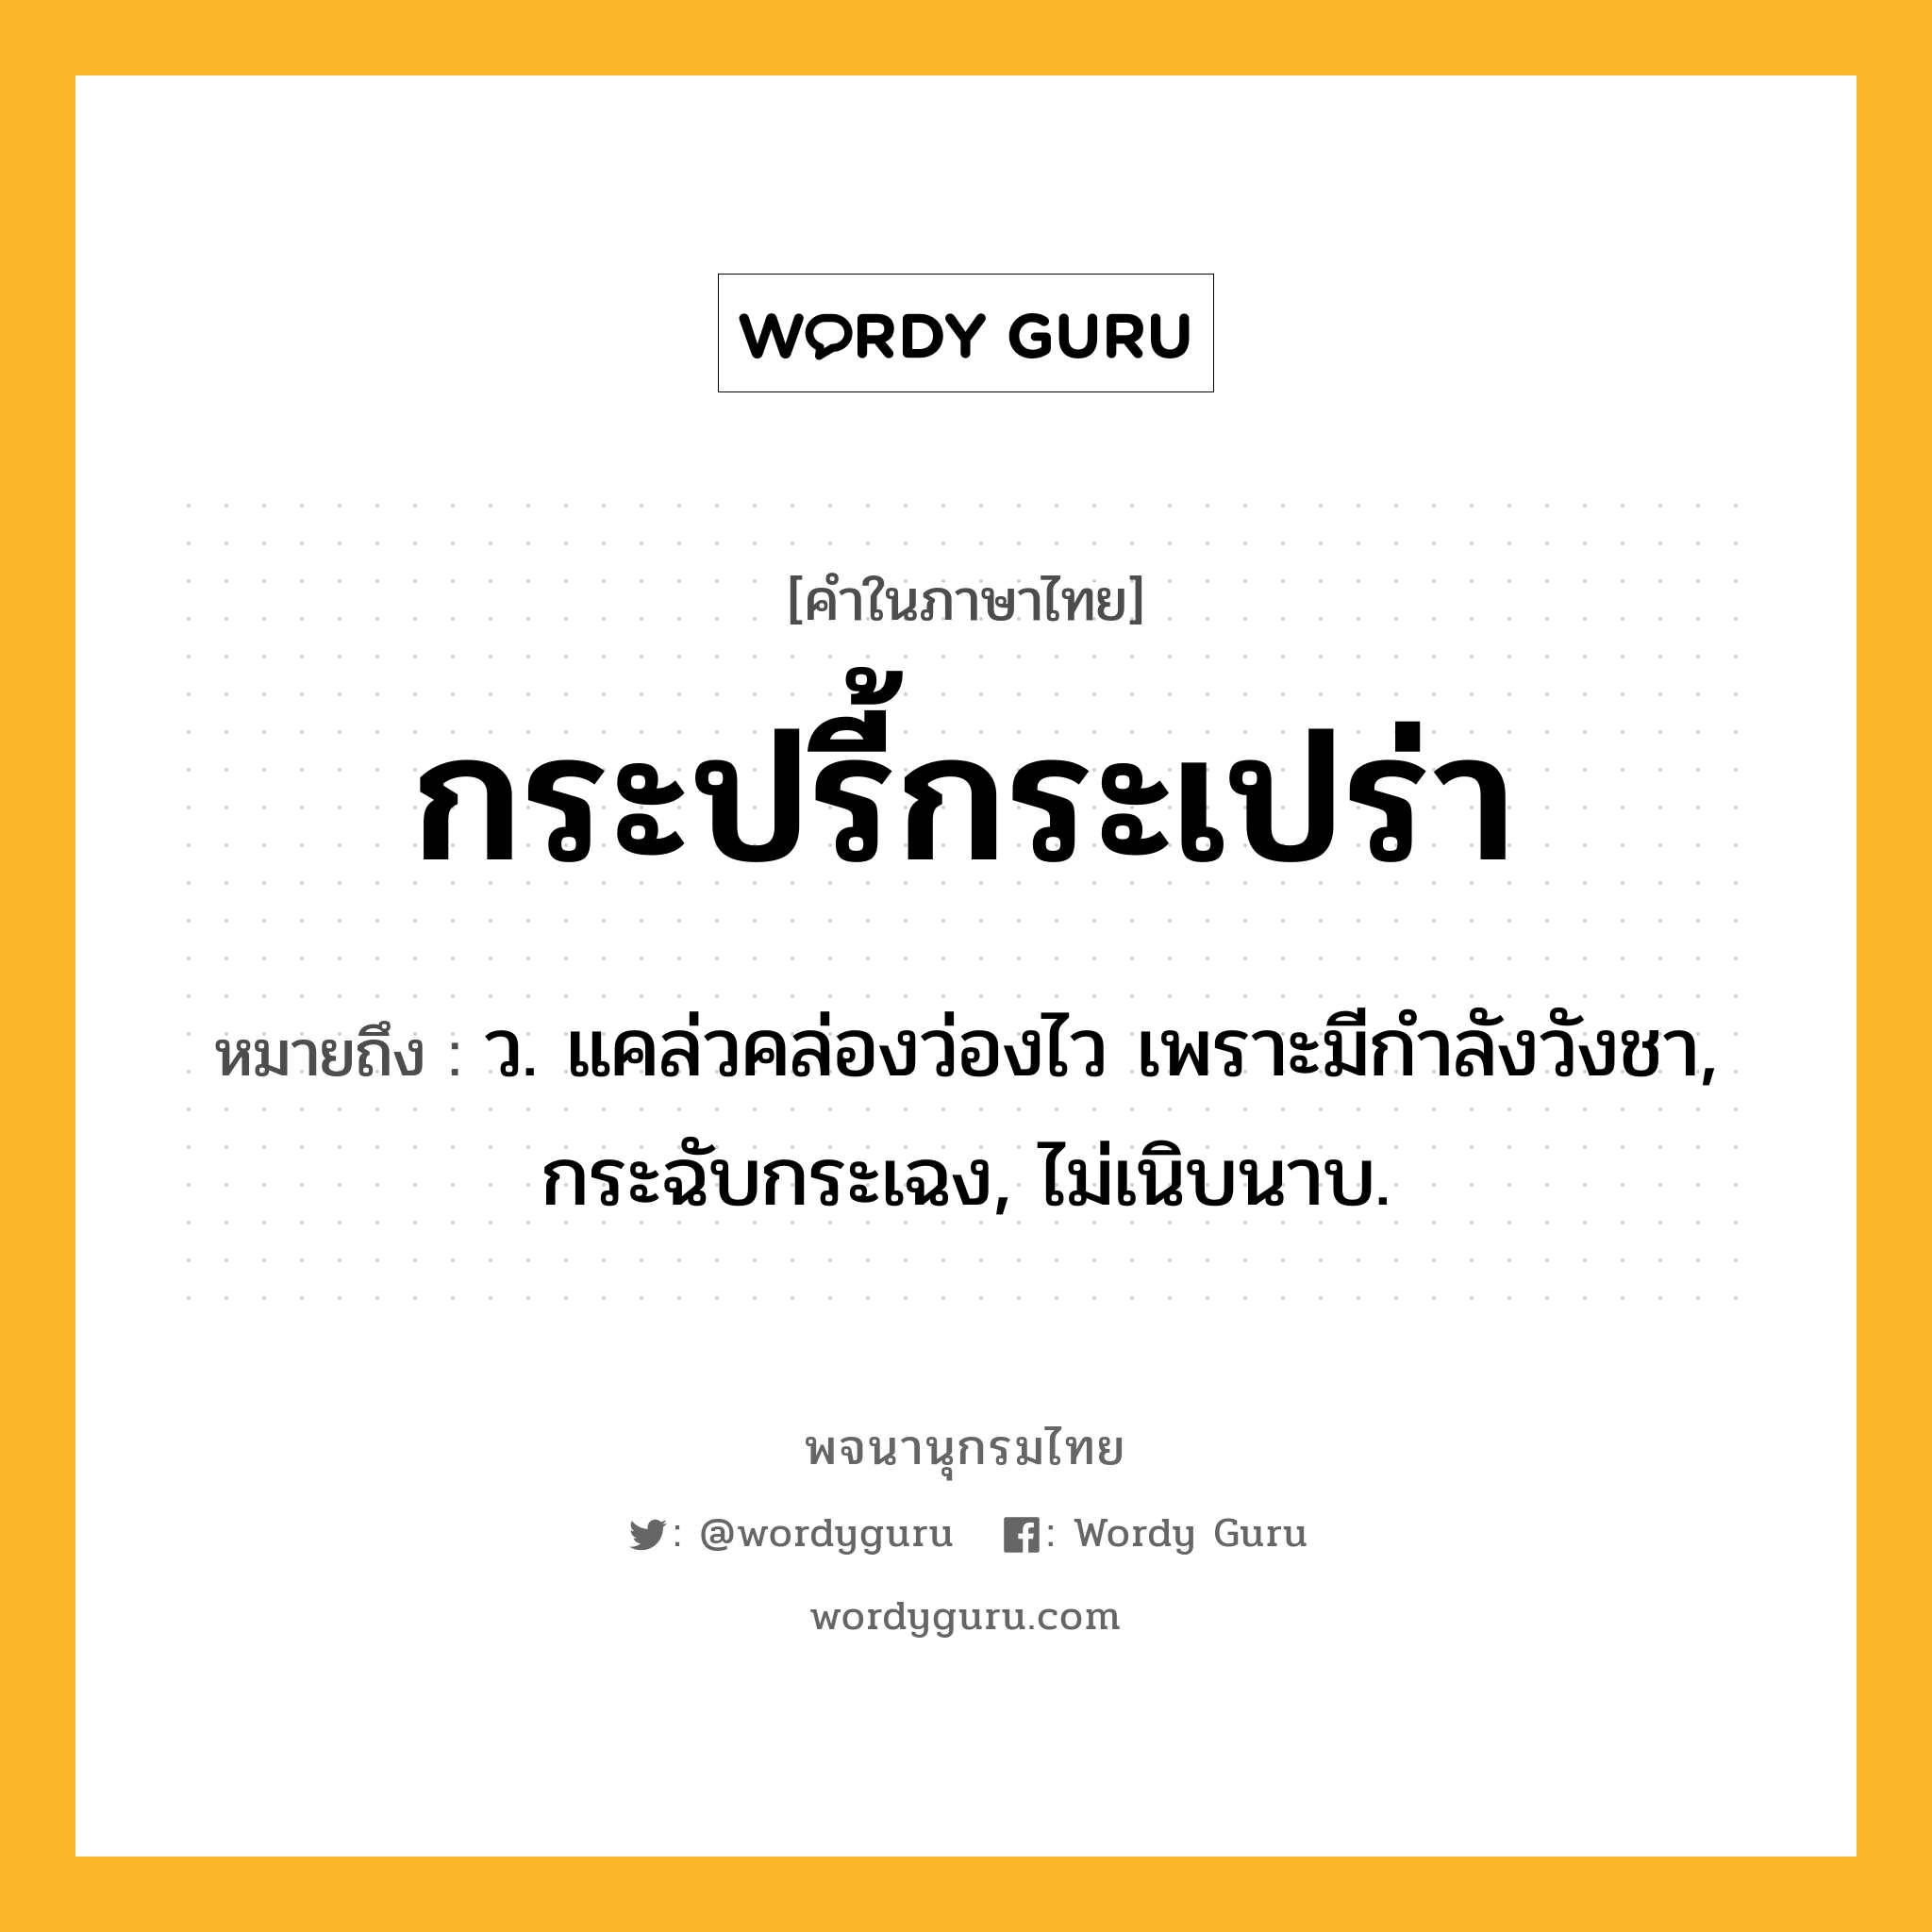 กระปรี้กระเปร่า ความหมาย หมายถึงอะไร?, คำในภาษาไทย กระปรี้กระเปร่า หมายถึง ว. แคล่วคล่องว่องไว เพราะมีกําลังวังชา, กระฉับกระเฉง, ไม่เนิบนาบ.